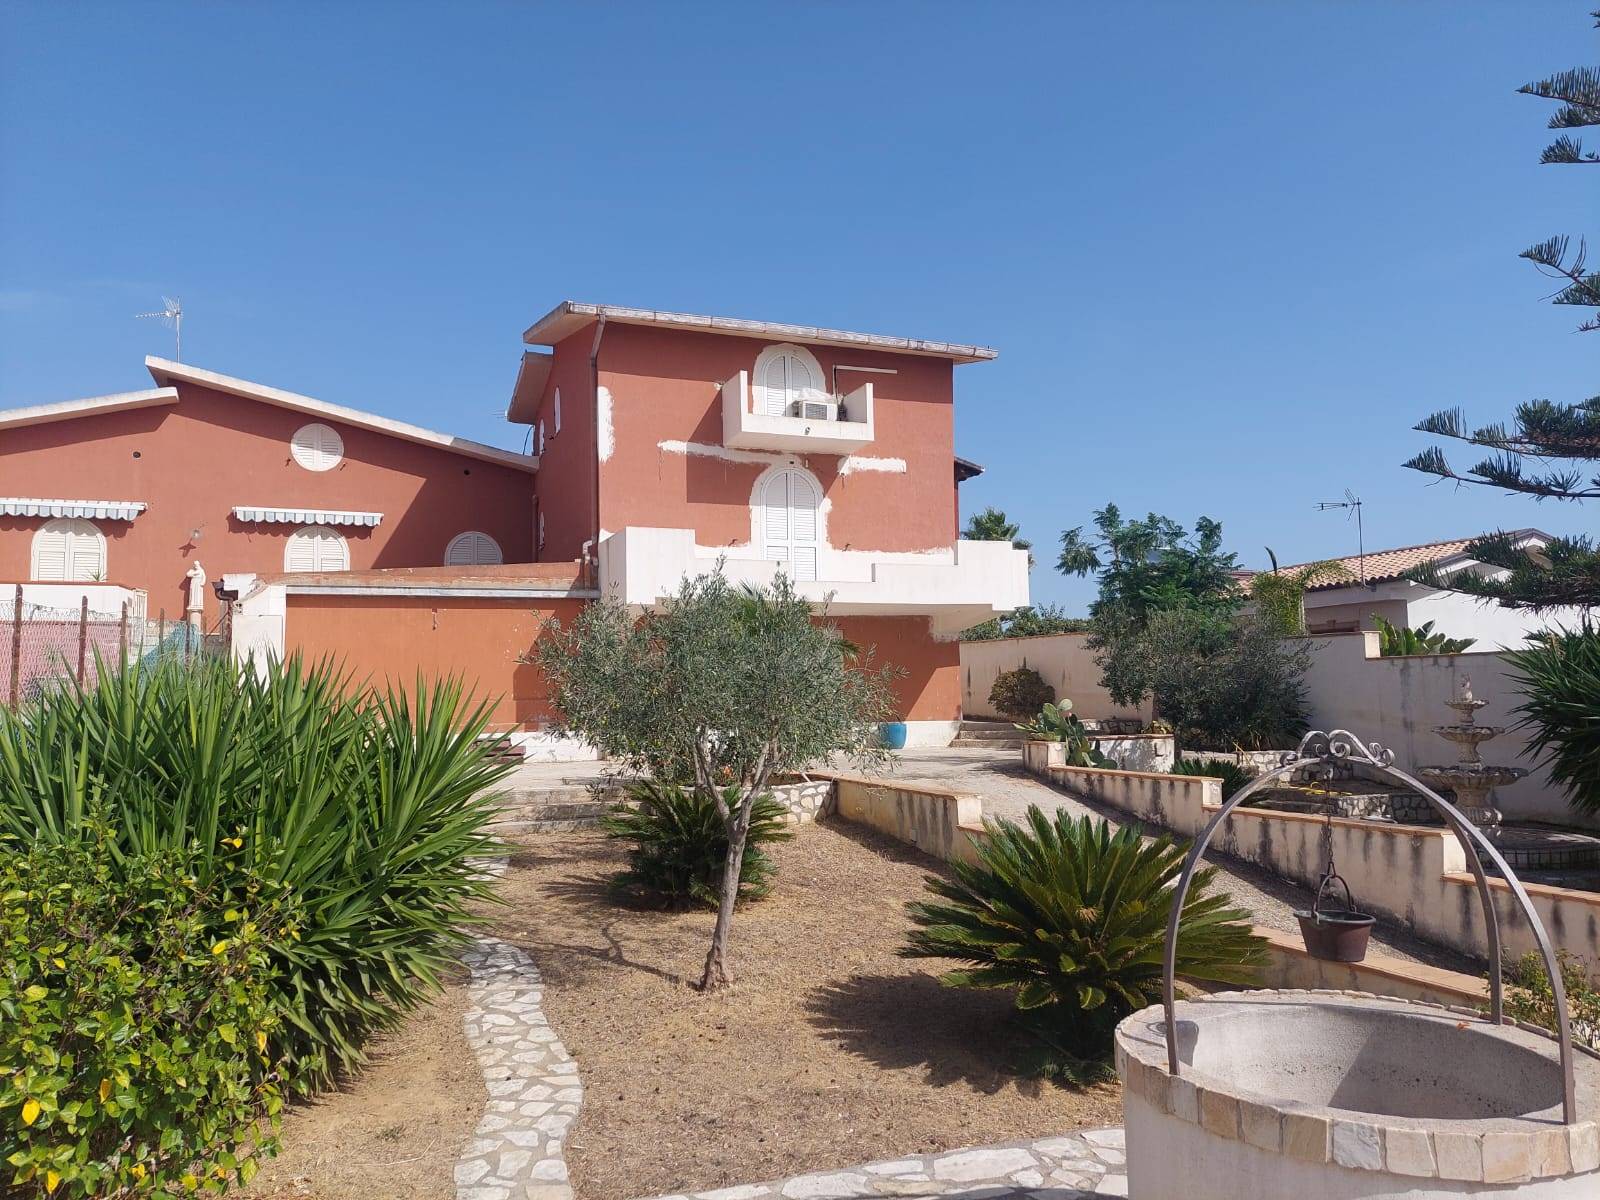 Villa in vendita a Agrigento, 7 locali, zona Località: VILLAGGIO MOSÉ, prezzo € 330.000 | PortaleAgenzieImmobiliari.it